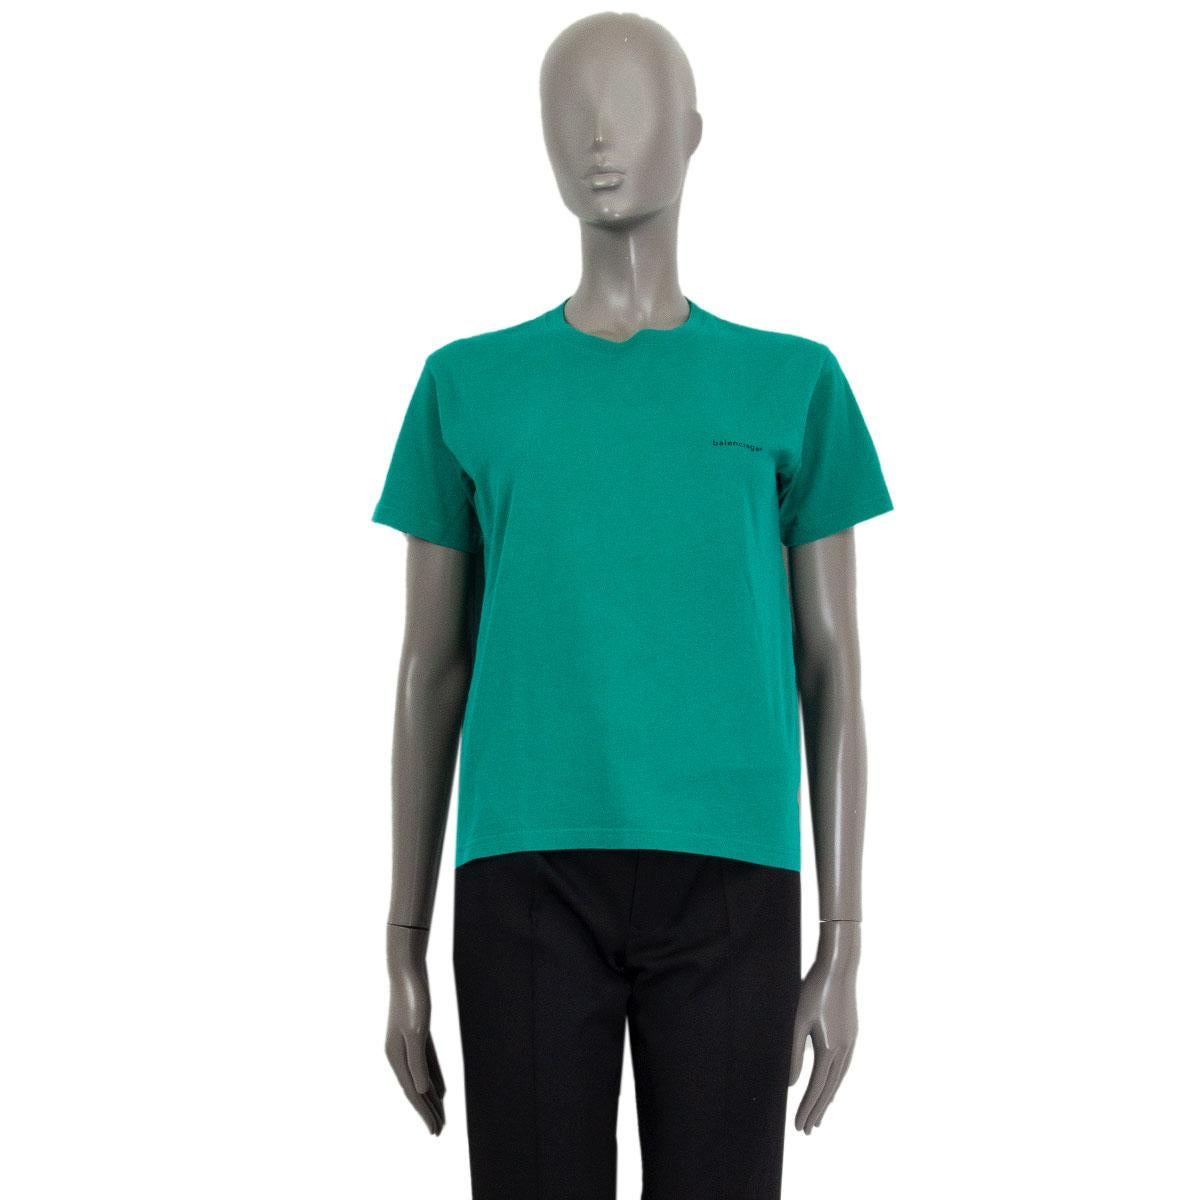 t-shirt basique à manches courtes 100% authentique Balenciaga en coton vert pertol (100%) dans une coupe box cropped. Le logo de la marque est imprimé en noir sur la poitrine gauche. A été porté et est en excellent état. 

Taille de l'étiquette